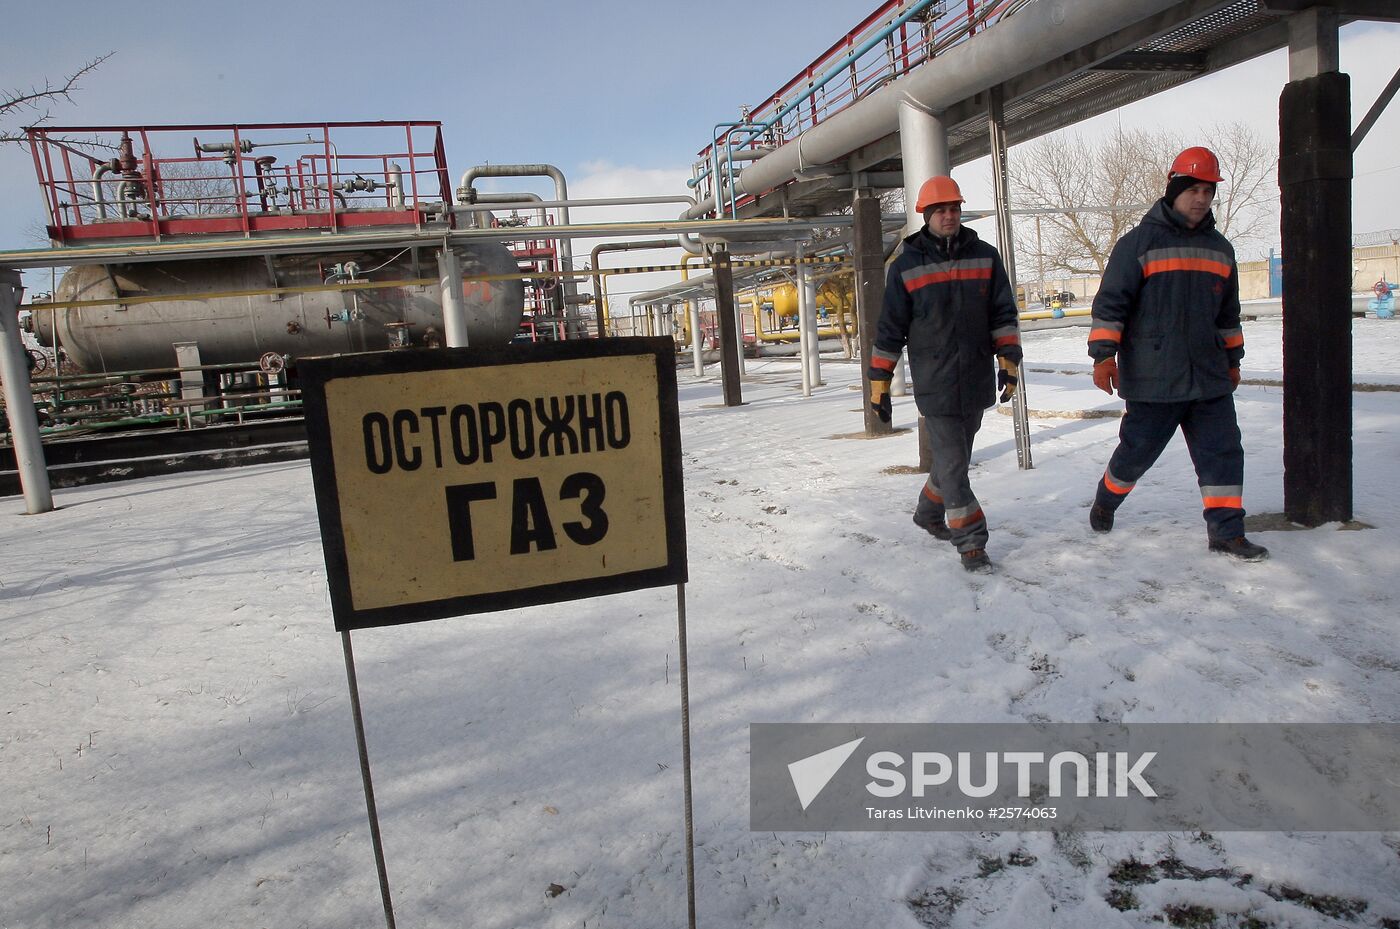 Gas storage facility of Chornomornaftogaz in Crimea